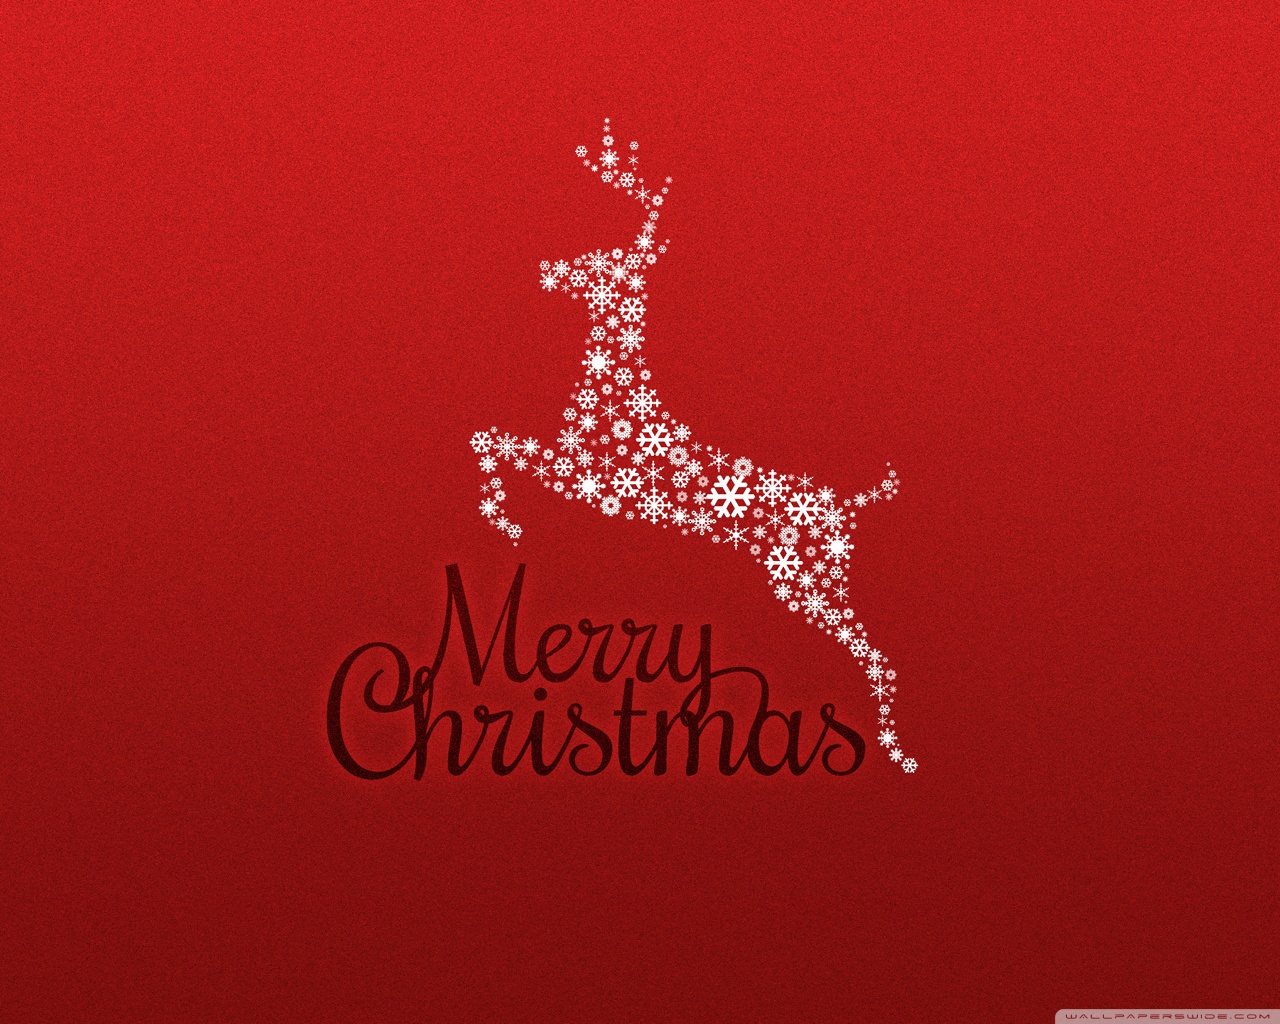 greeting card wallpaper,red,giraffe,text,reindeer,logo